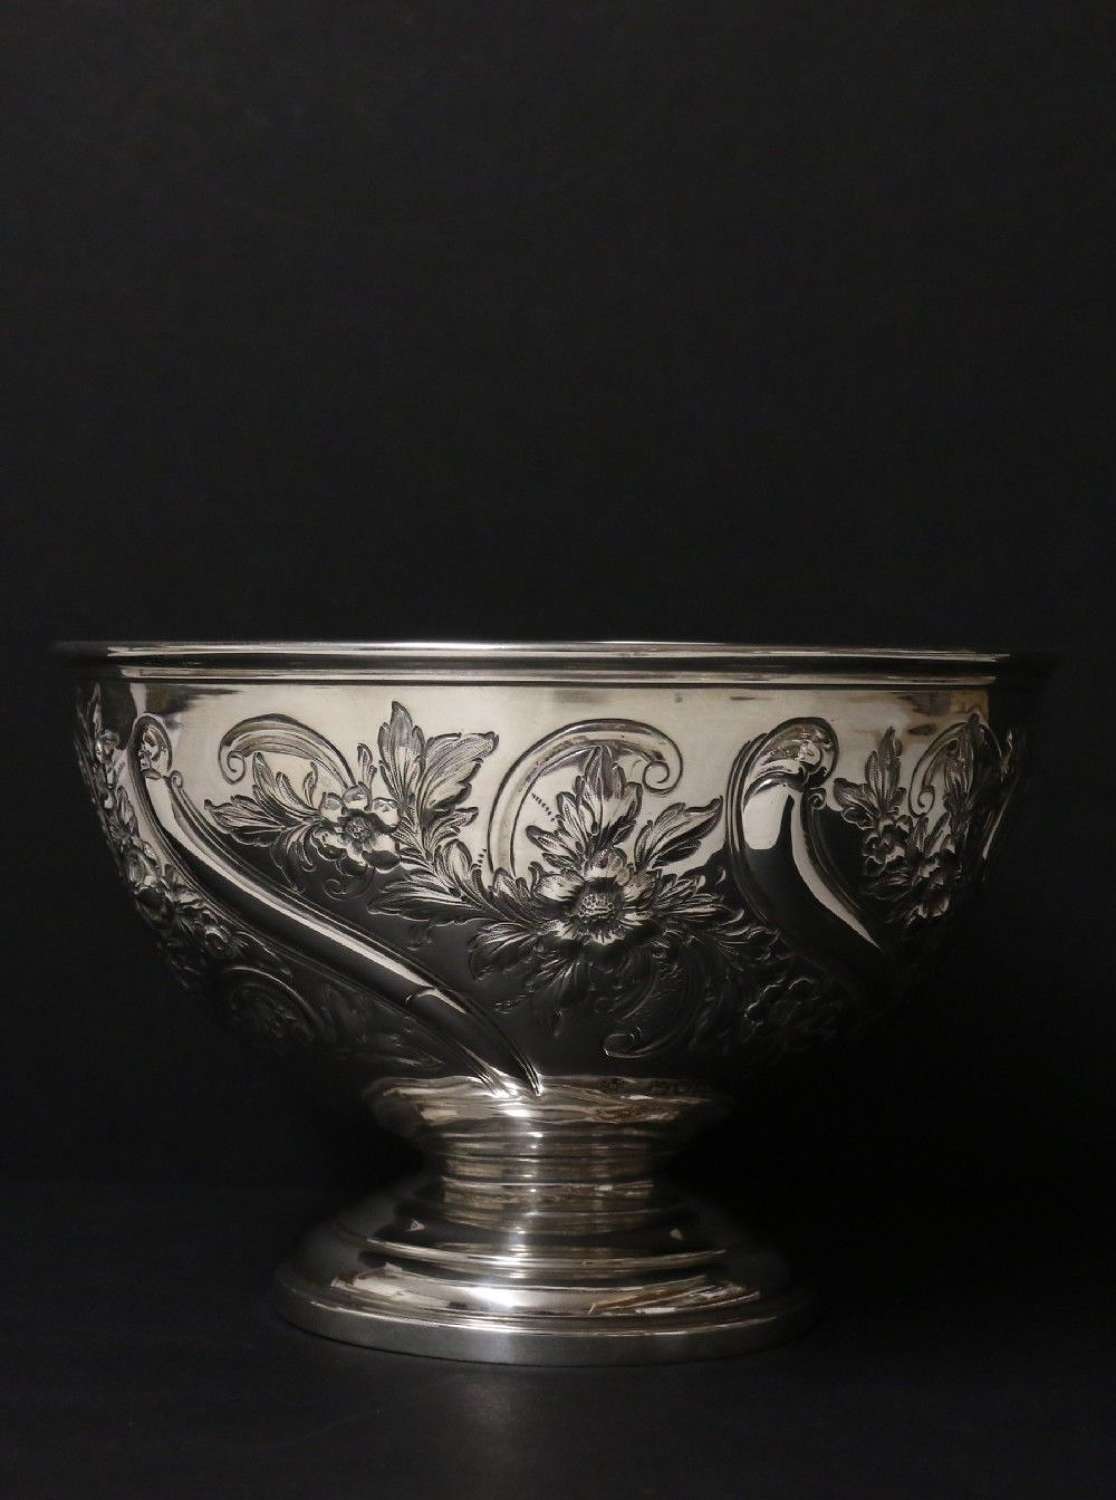 19th c elegant silver bowl by Edward Barnard & Sons London 1897-8